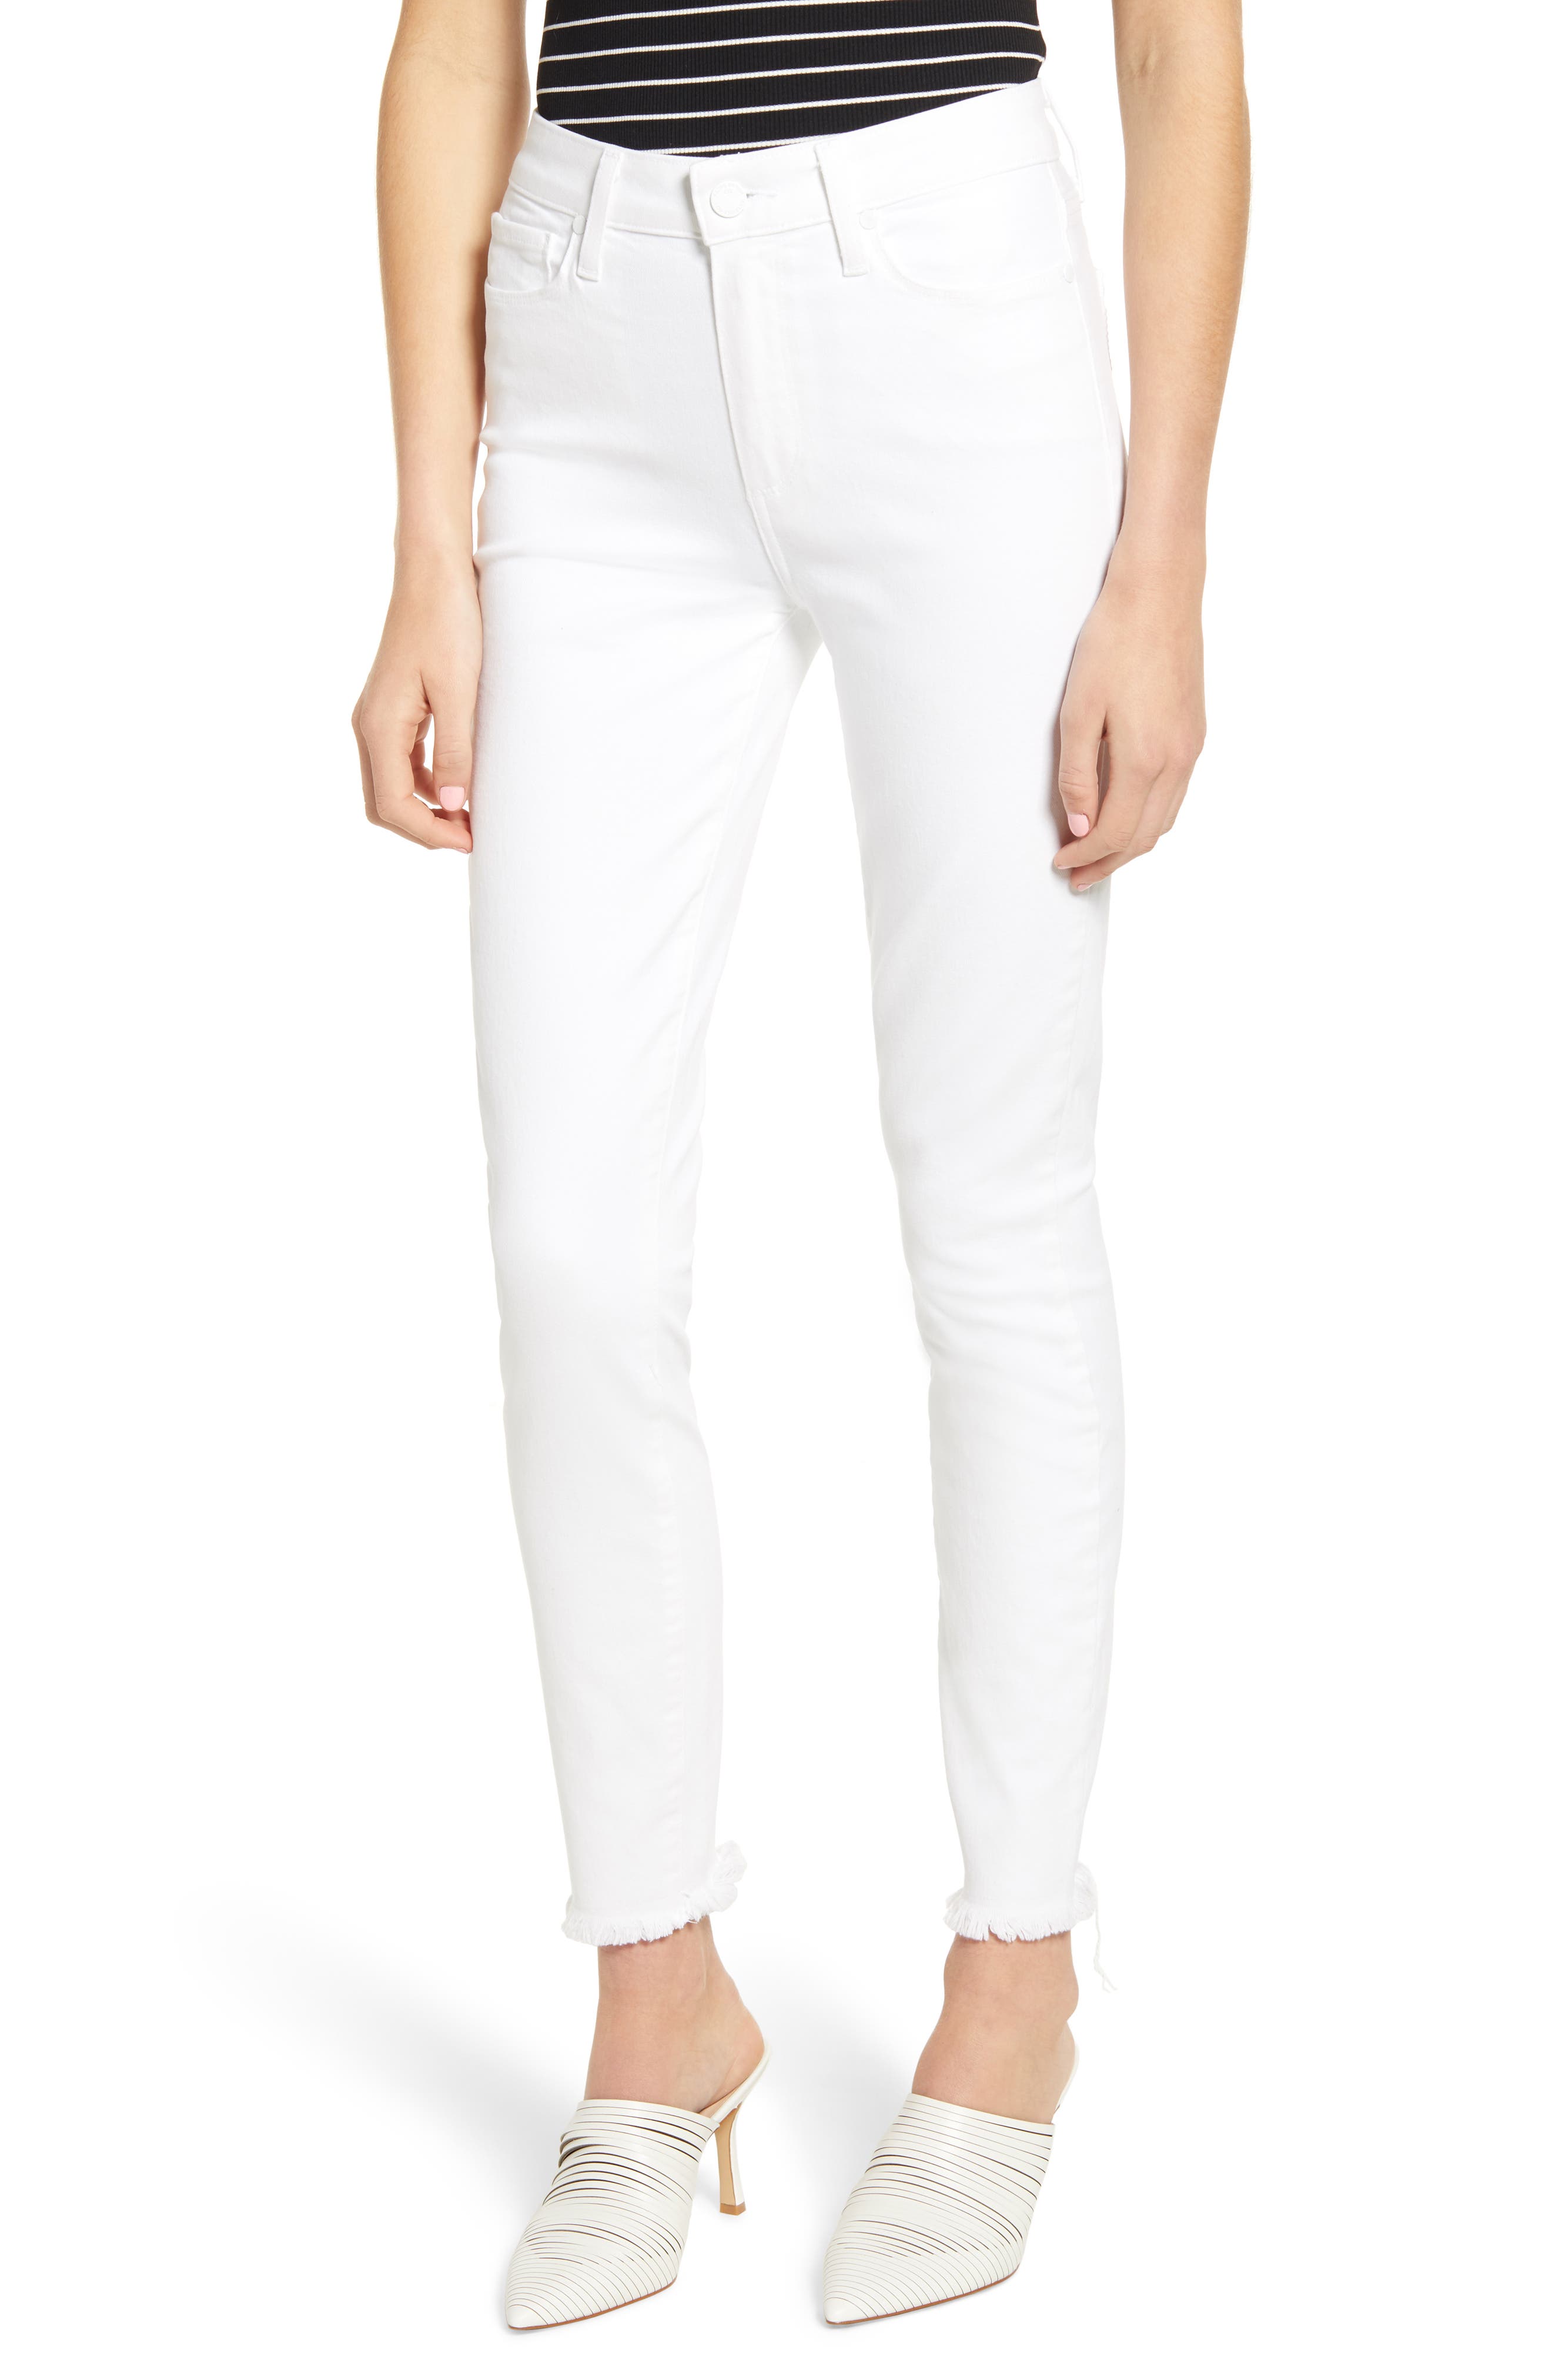 paige hoxton white jeans